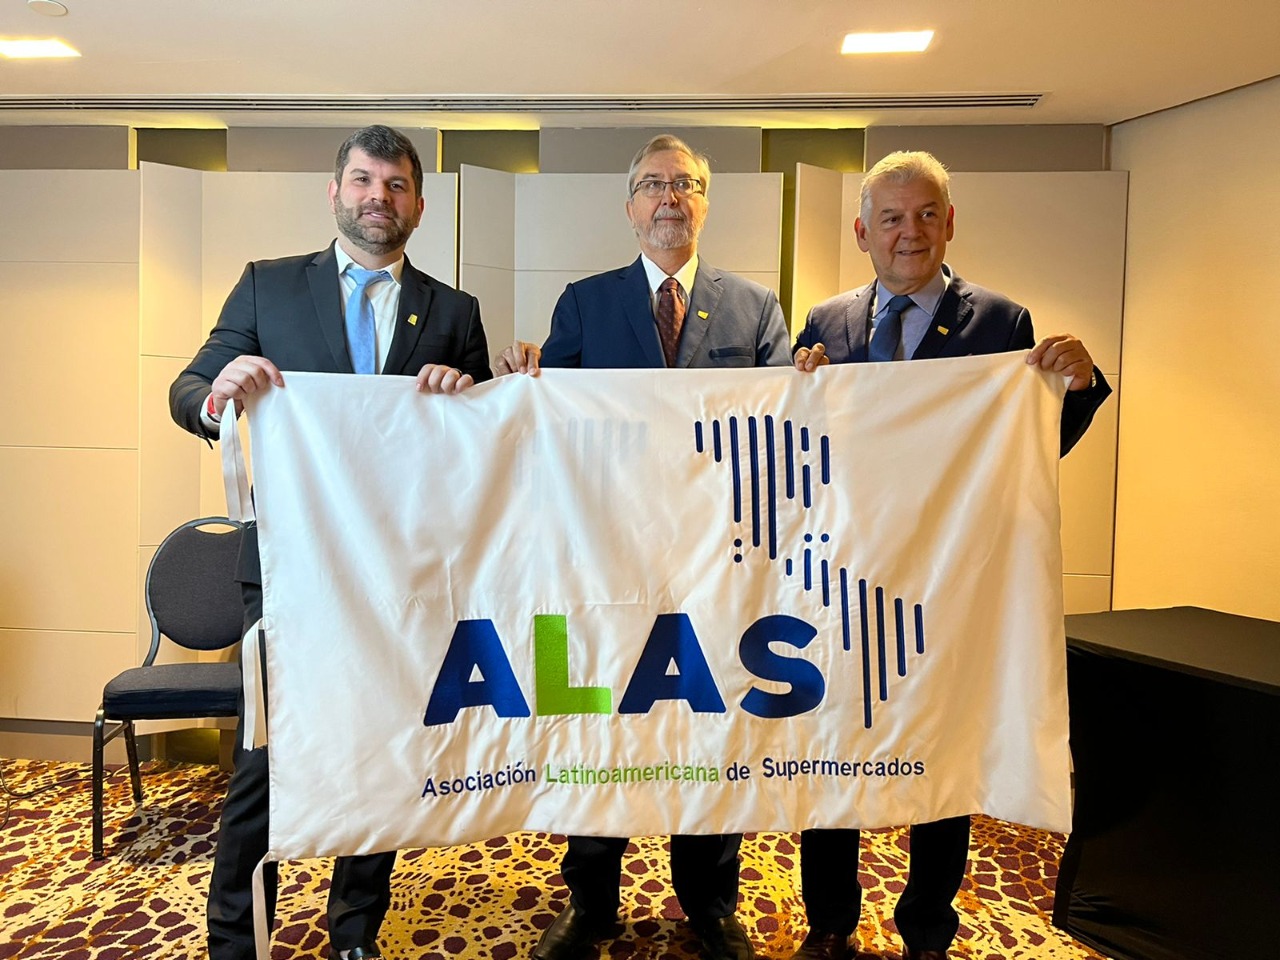 A nova diretoria da ALAS (da esquerda para a direita): Fábio Queiróz (Brasil), vice-presidente; Ricardo Zorzon (Argentina) presidente; e Jaime Cabral (Colômbia) vice-presidente